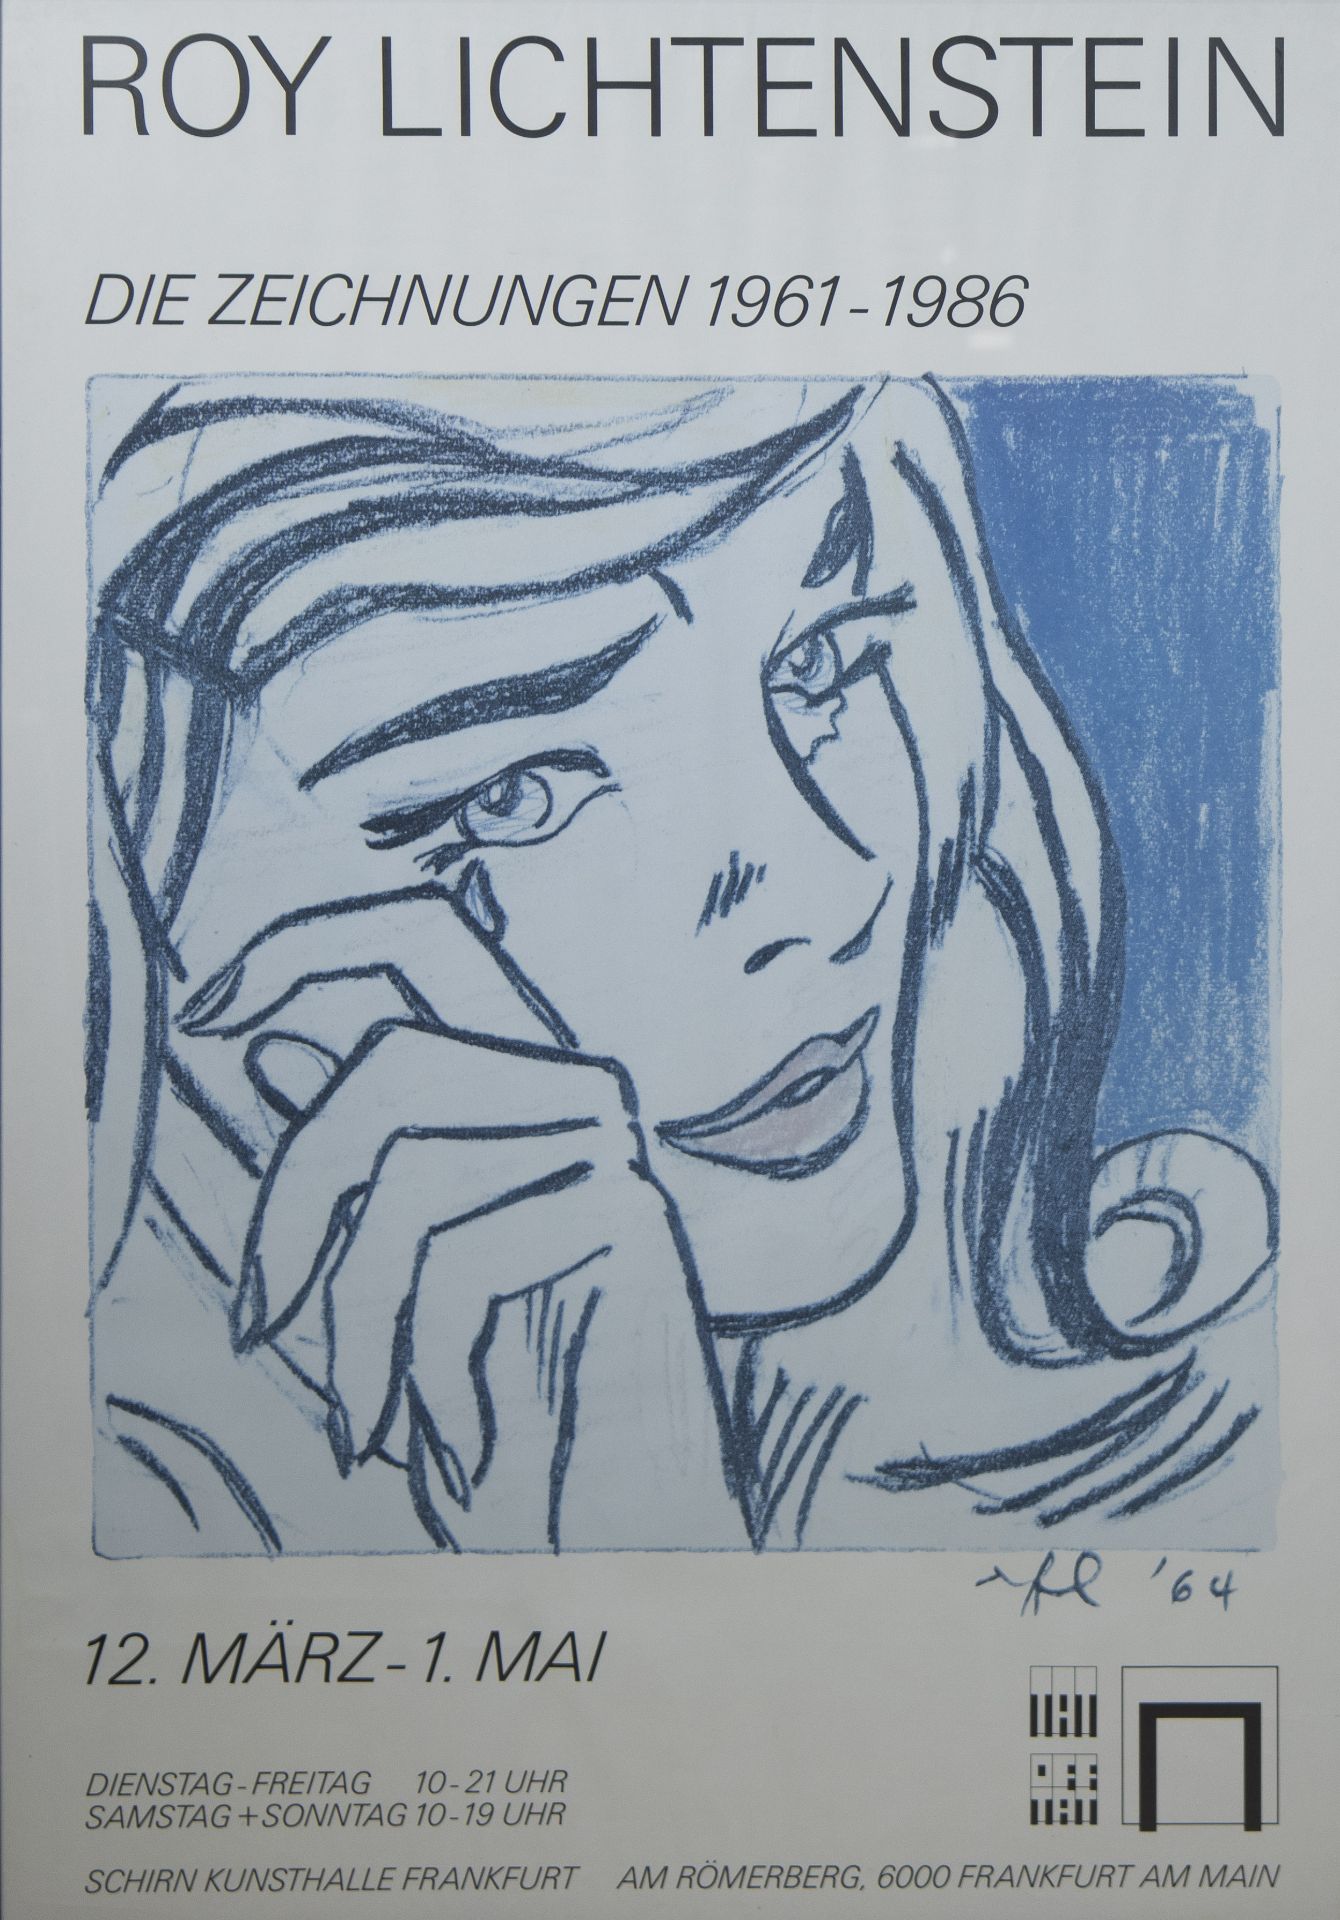 2 posters by Roy Lichtenstein 1964 and MIRO 1988, Schirn Kunsthalle Frankfurt, framed - Bild 2 aus 5